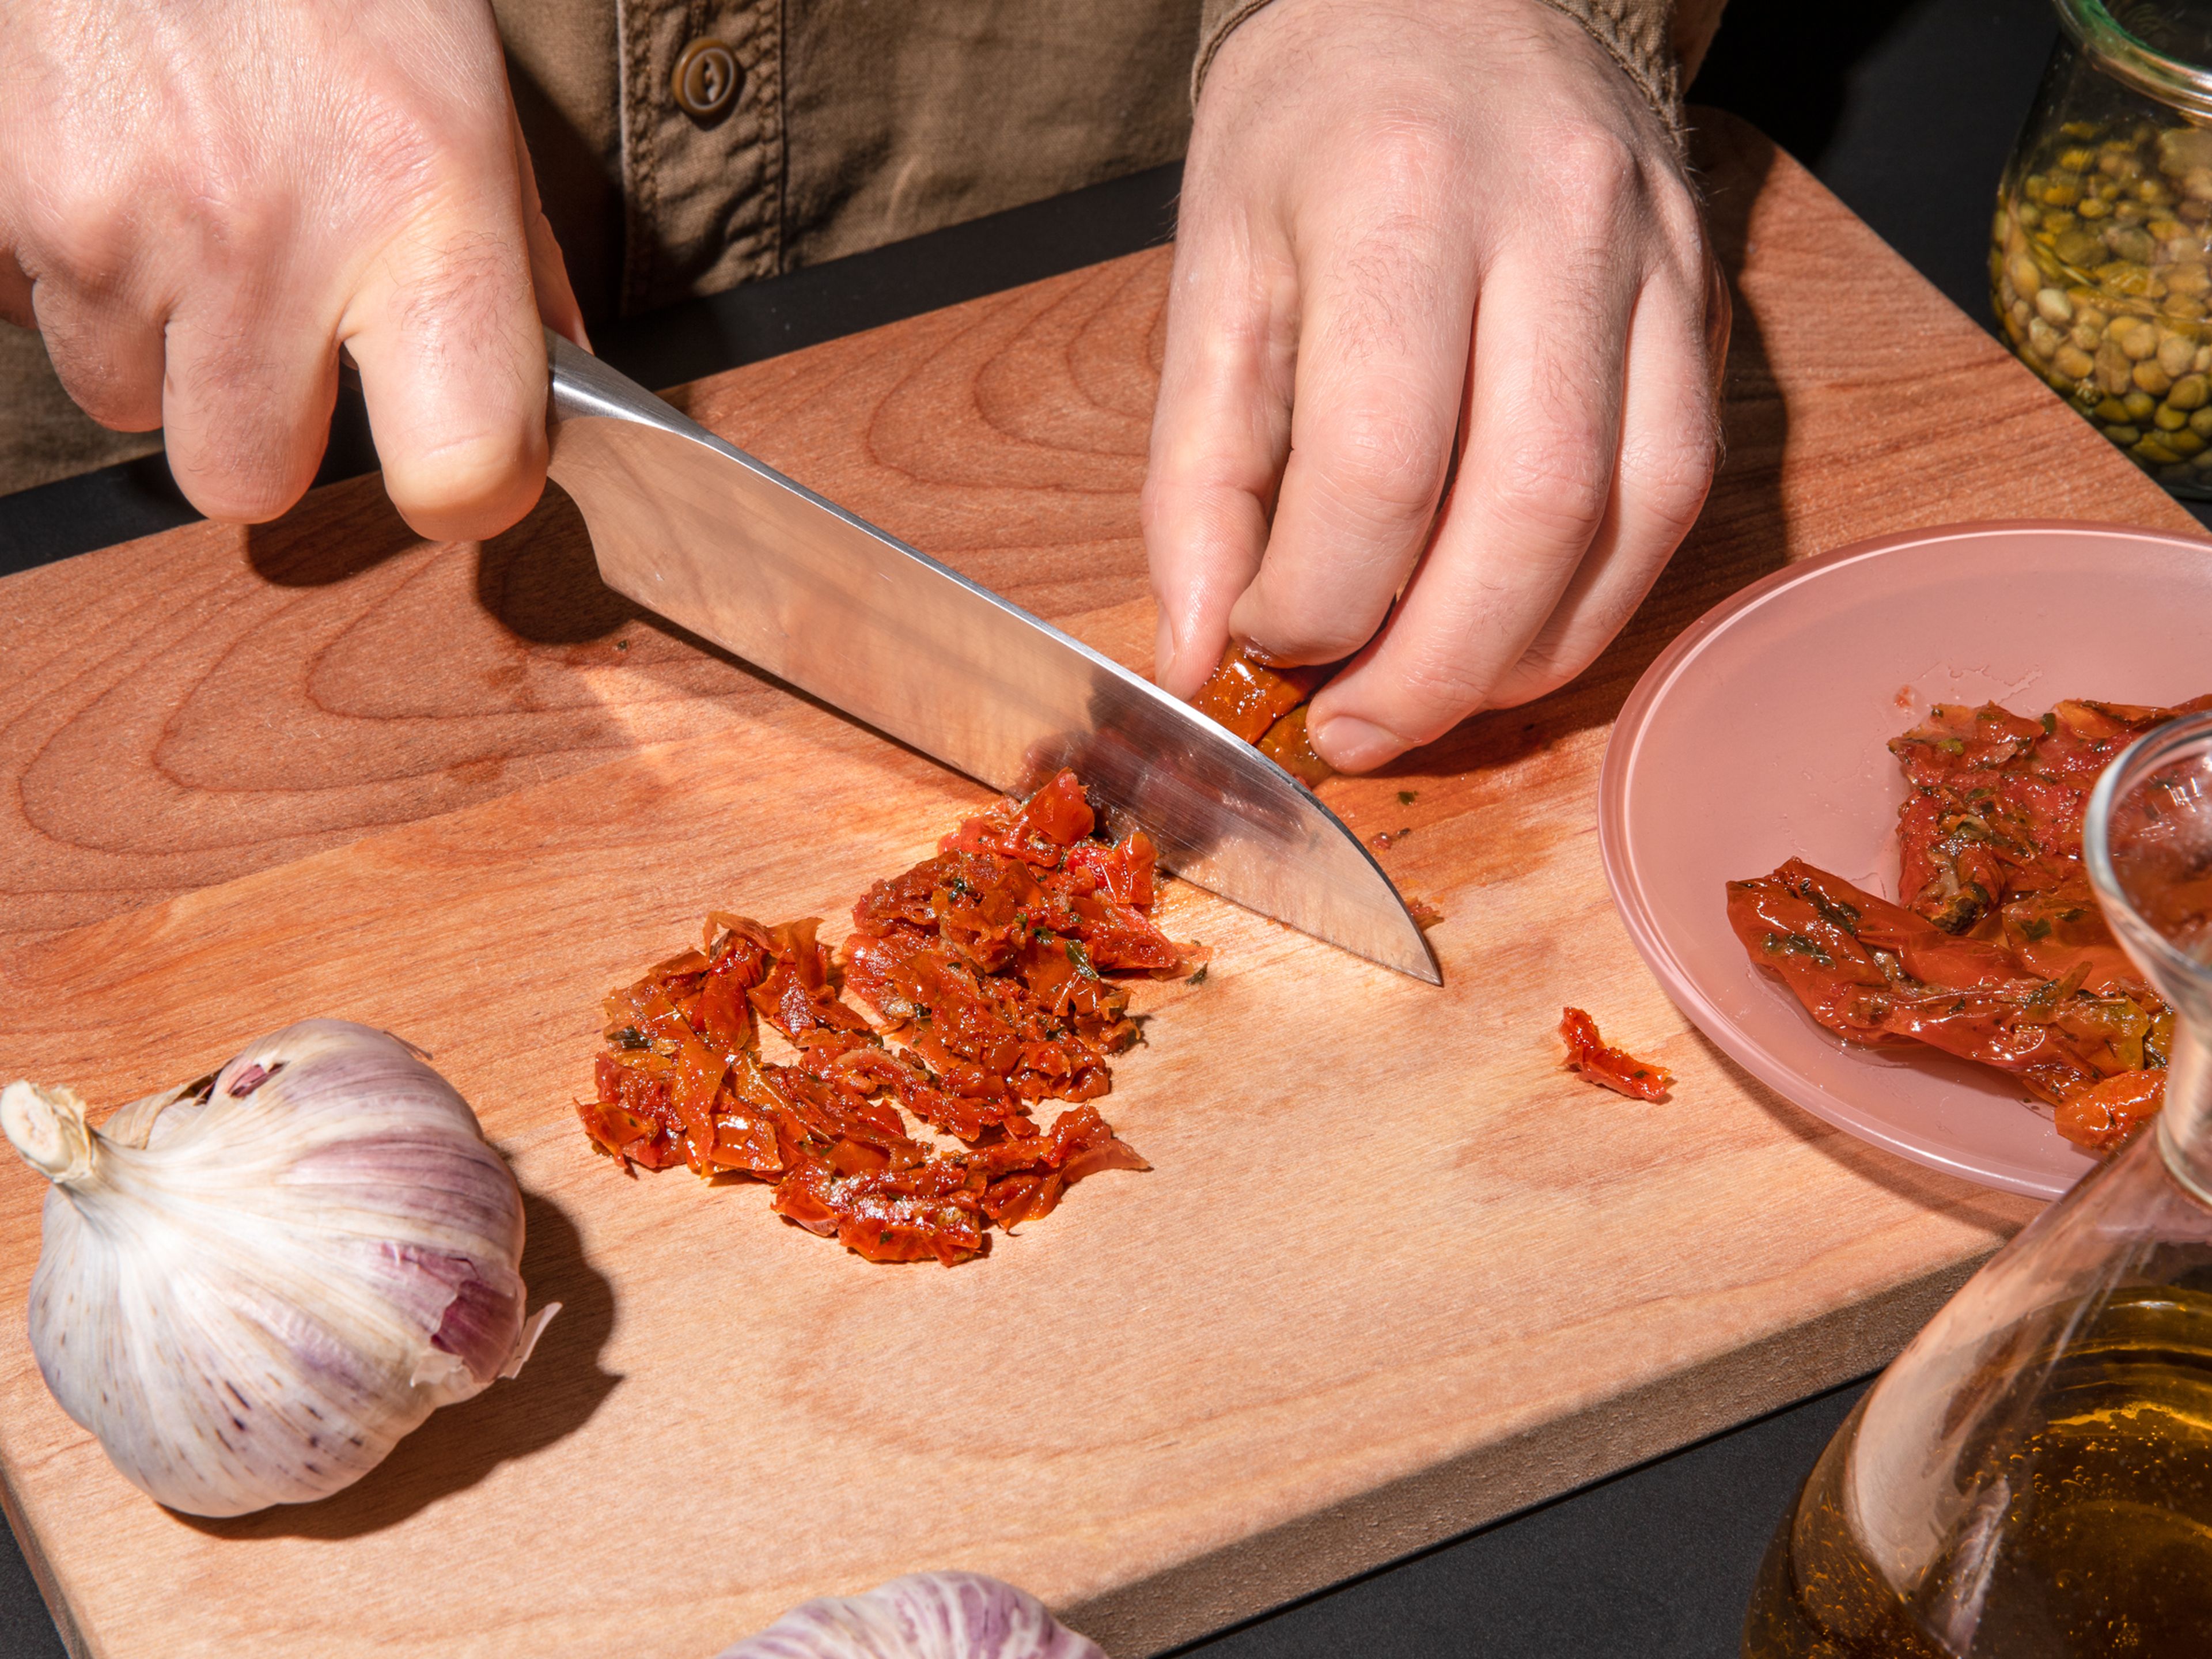 Backofen auf 180°C vorheizen. Frischkäse aus dem Kühlschrank nehmen, damit er bei Zimmertemperatur weich wird. In der Zwischenzeit die getrockneten Tomaten abtropfen lassen und in dünne Streifen schneiden, die Kapern abtropfen lassen und mit einem Küchentuch trocknen und den Knoblauch in dünne Scheiben schneiden. Das Ciabatta in dünne Scheiben schneiden und den Basilikum hacken.